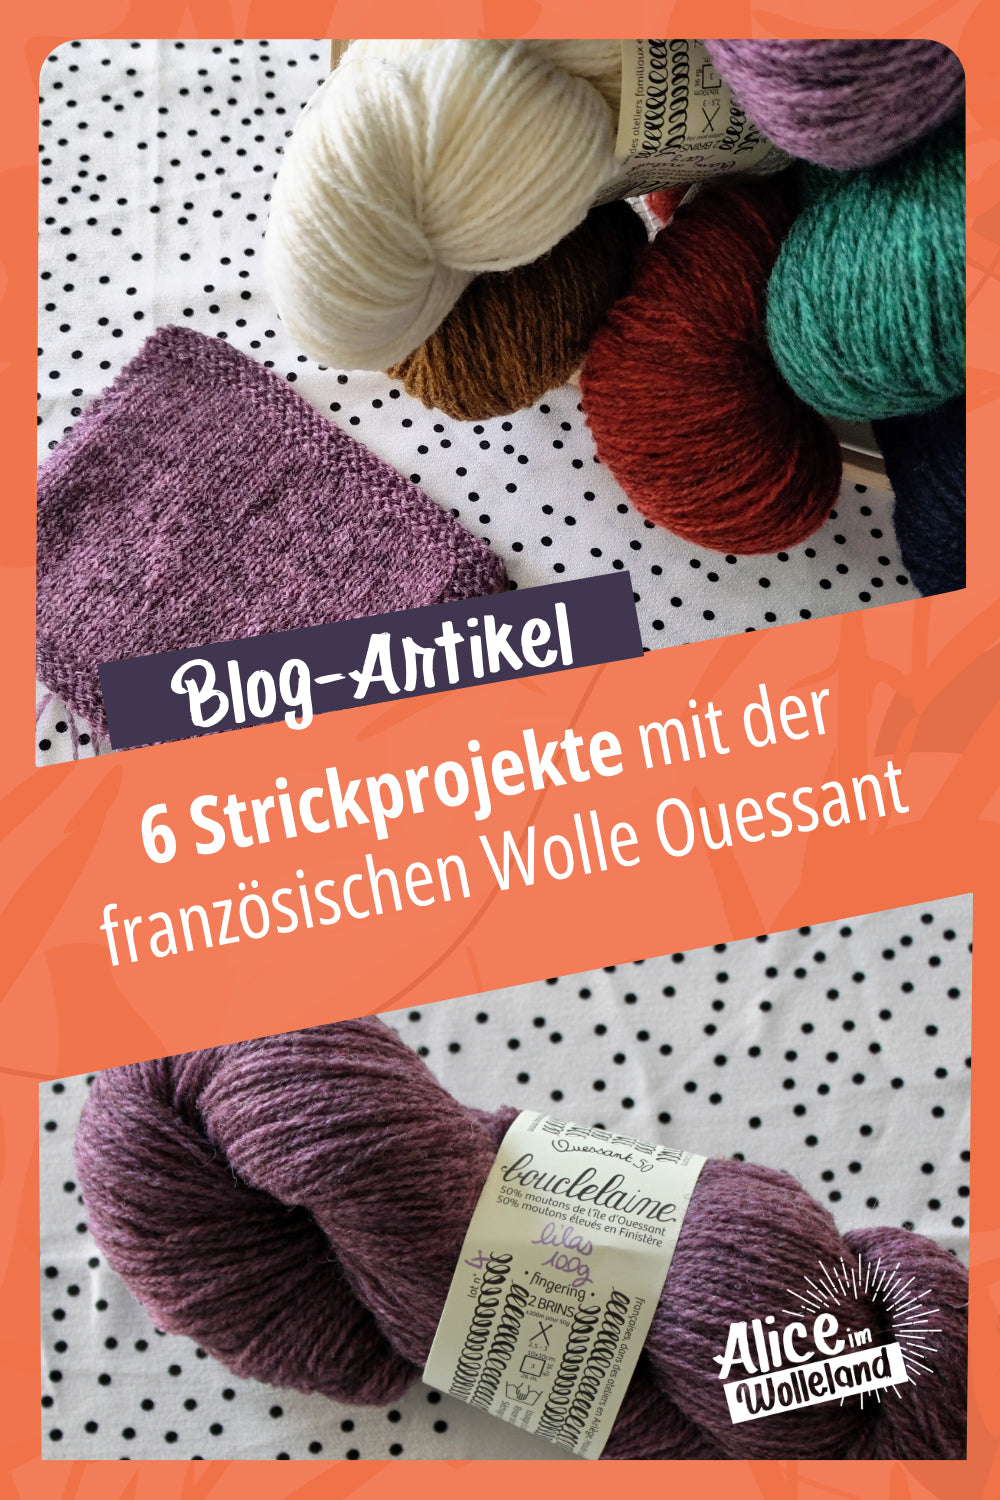 Bunte Wolle und Maschenprobe in der Farbe Lila mit dem Titel 6 Strickprojekte mit der französischen Wolle Ouessant